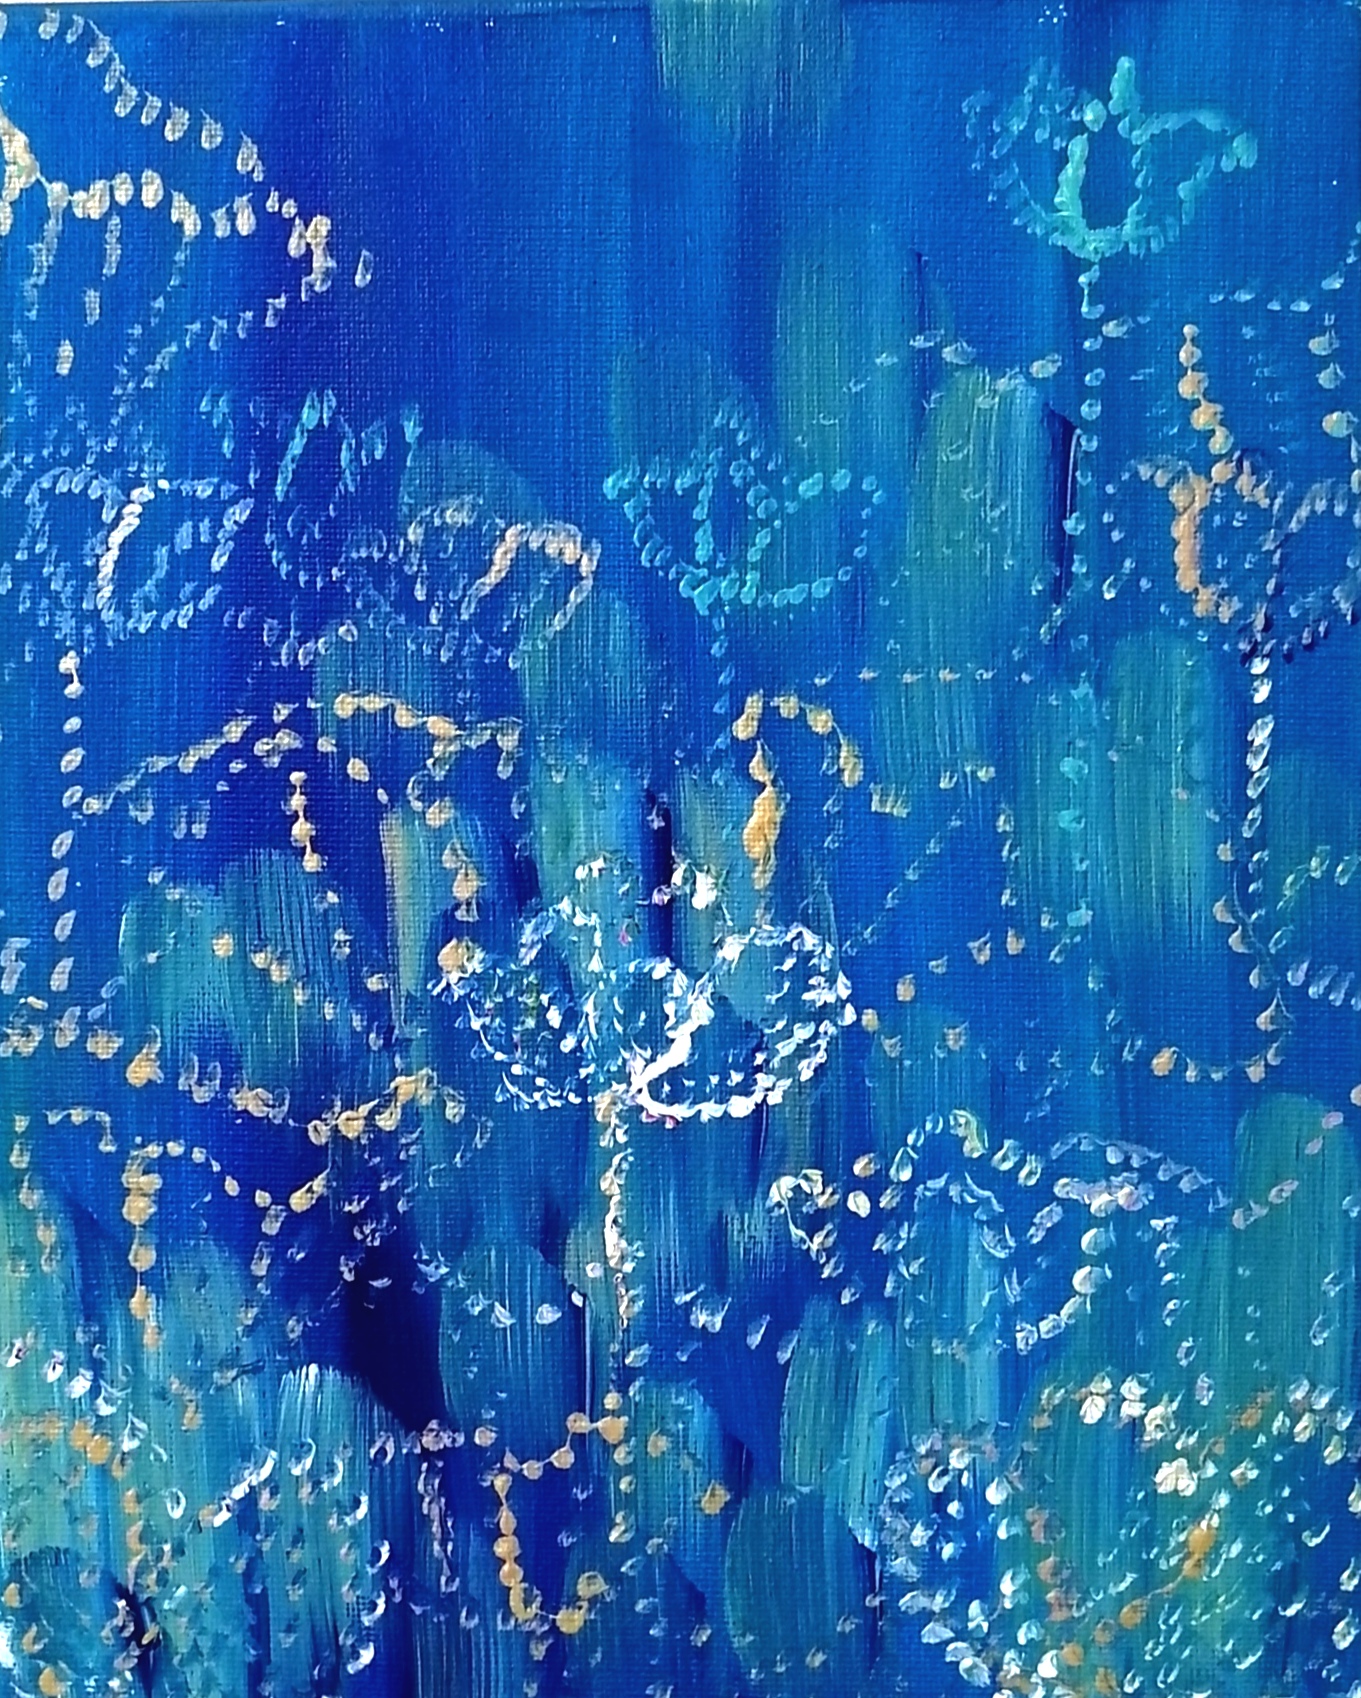 Indigo Lotus Flower 藍色の蓮の花 現代アート 絵画の通販 販売サイト Thisisgallery ディスイズギャラリー